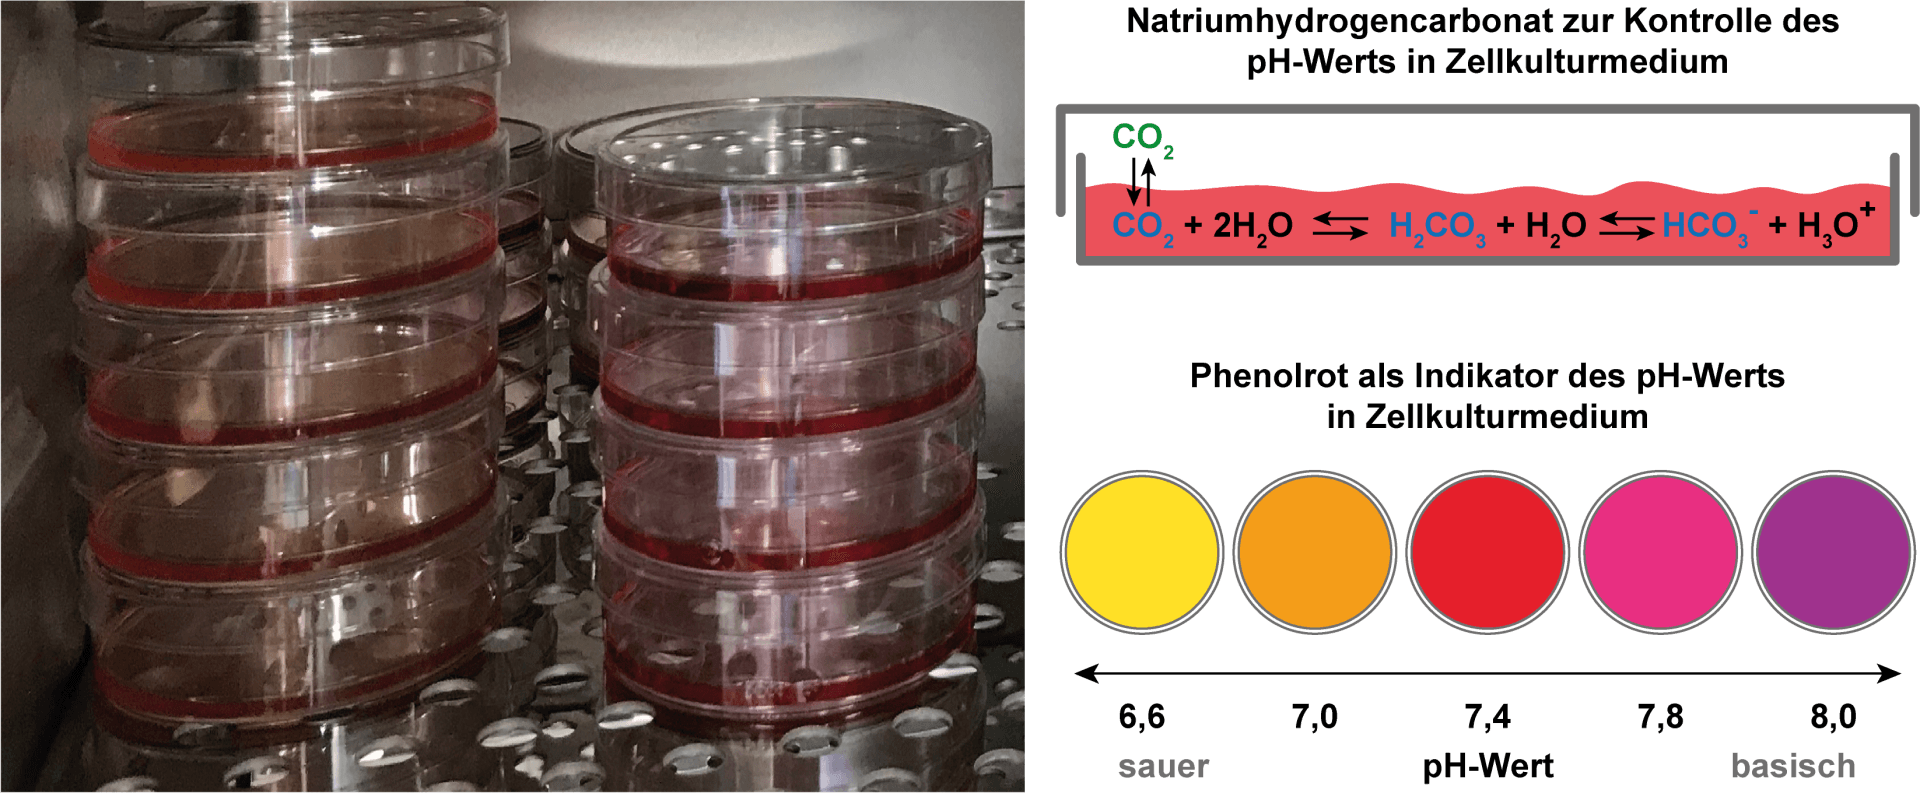 pH-Wert des Zellkulturmediums. Natriumhydrogencarbonat zur Kontrolle des pH-Werts in Zellkulturmedium. Phuenolrot als Indikator des pH-Werts in Zellkulturmedium.